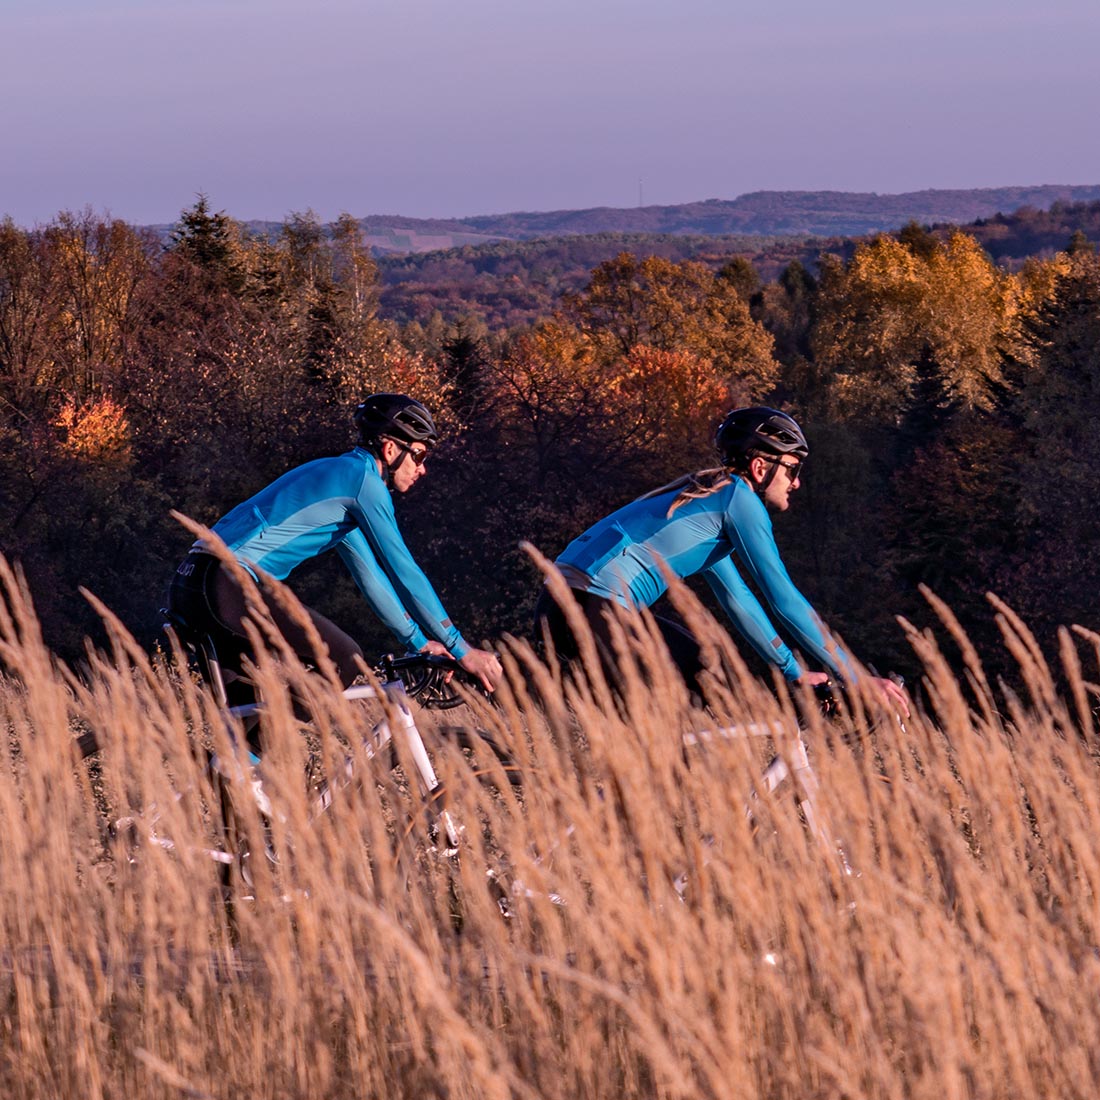 jak się ubrać na rower jesienią i w zimie na chł&oacute;d i niskie temperatury - odzież kolarska klasy premium Luxa